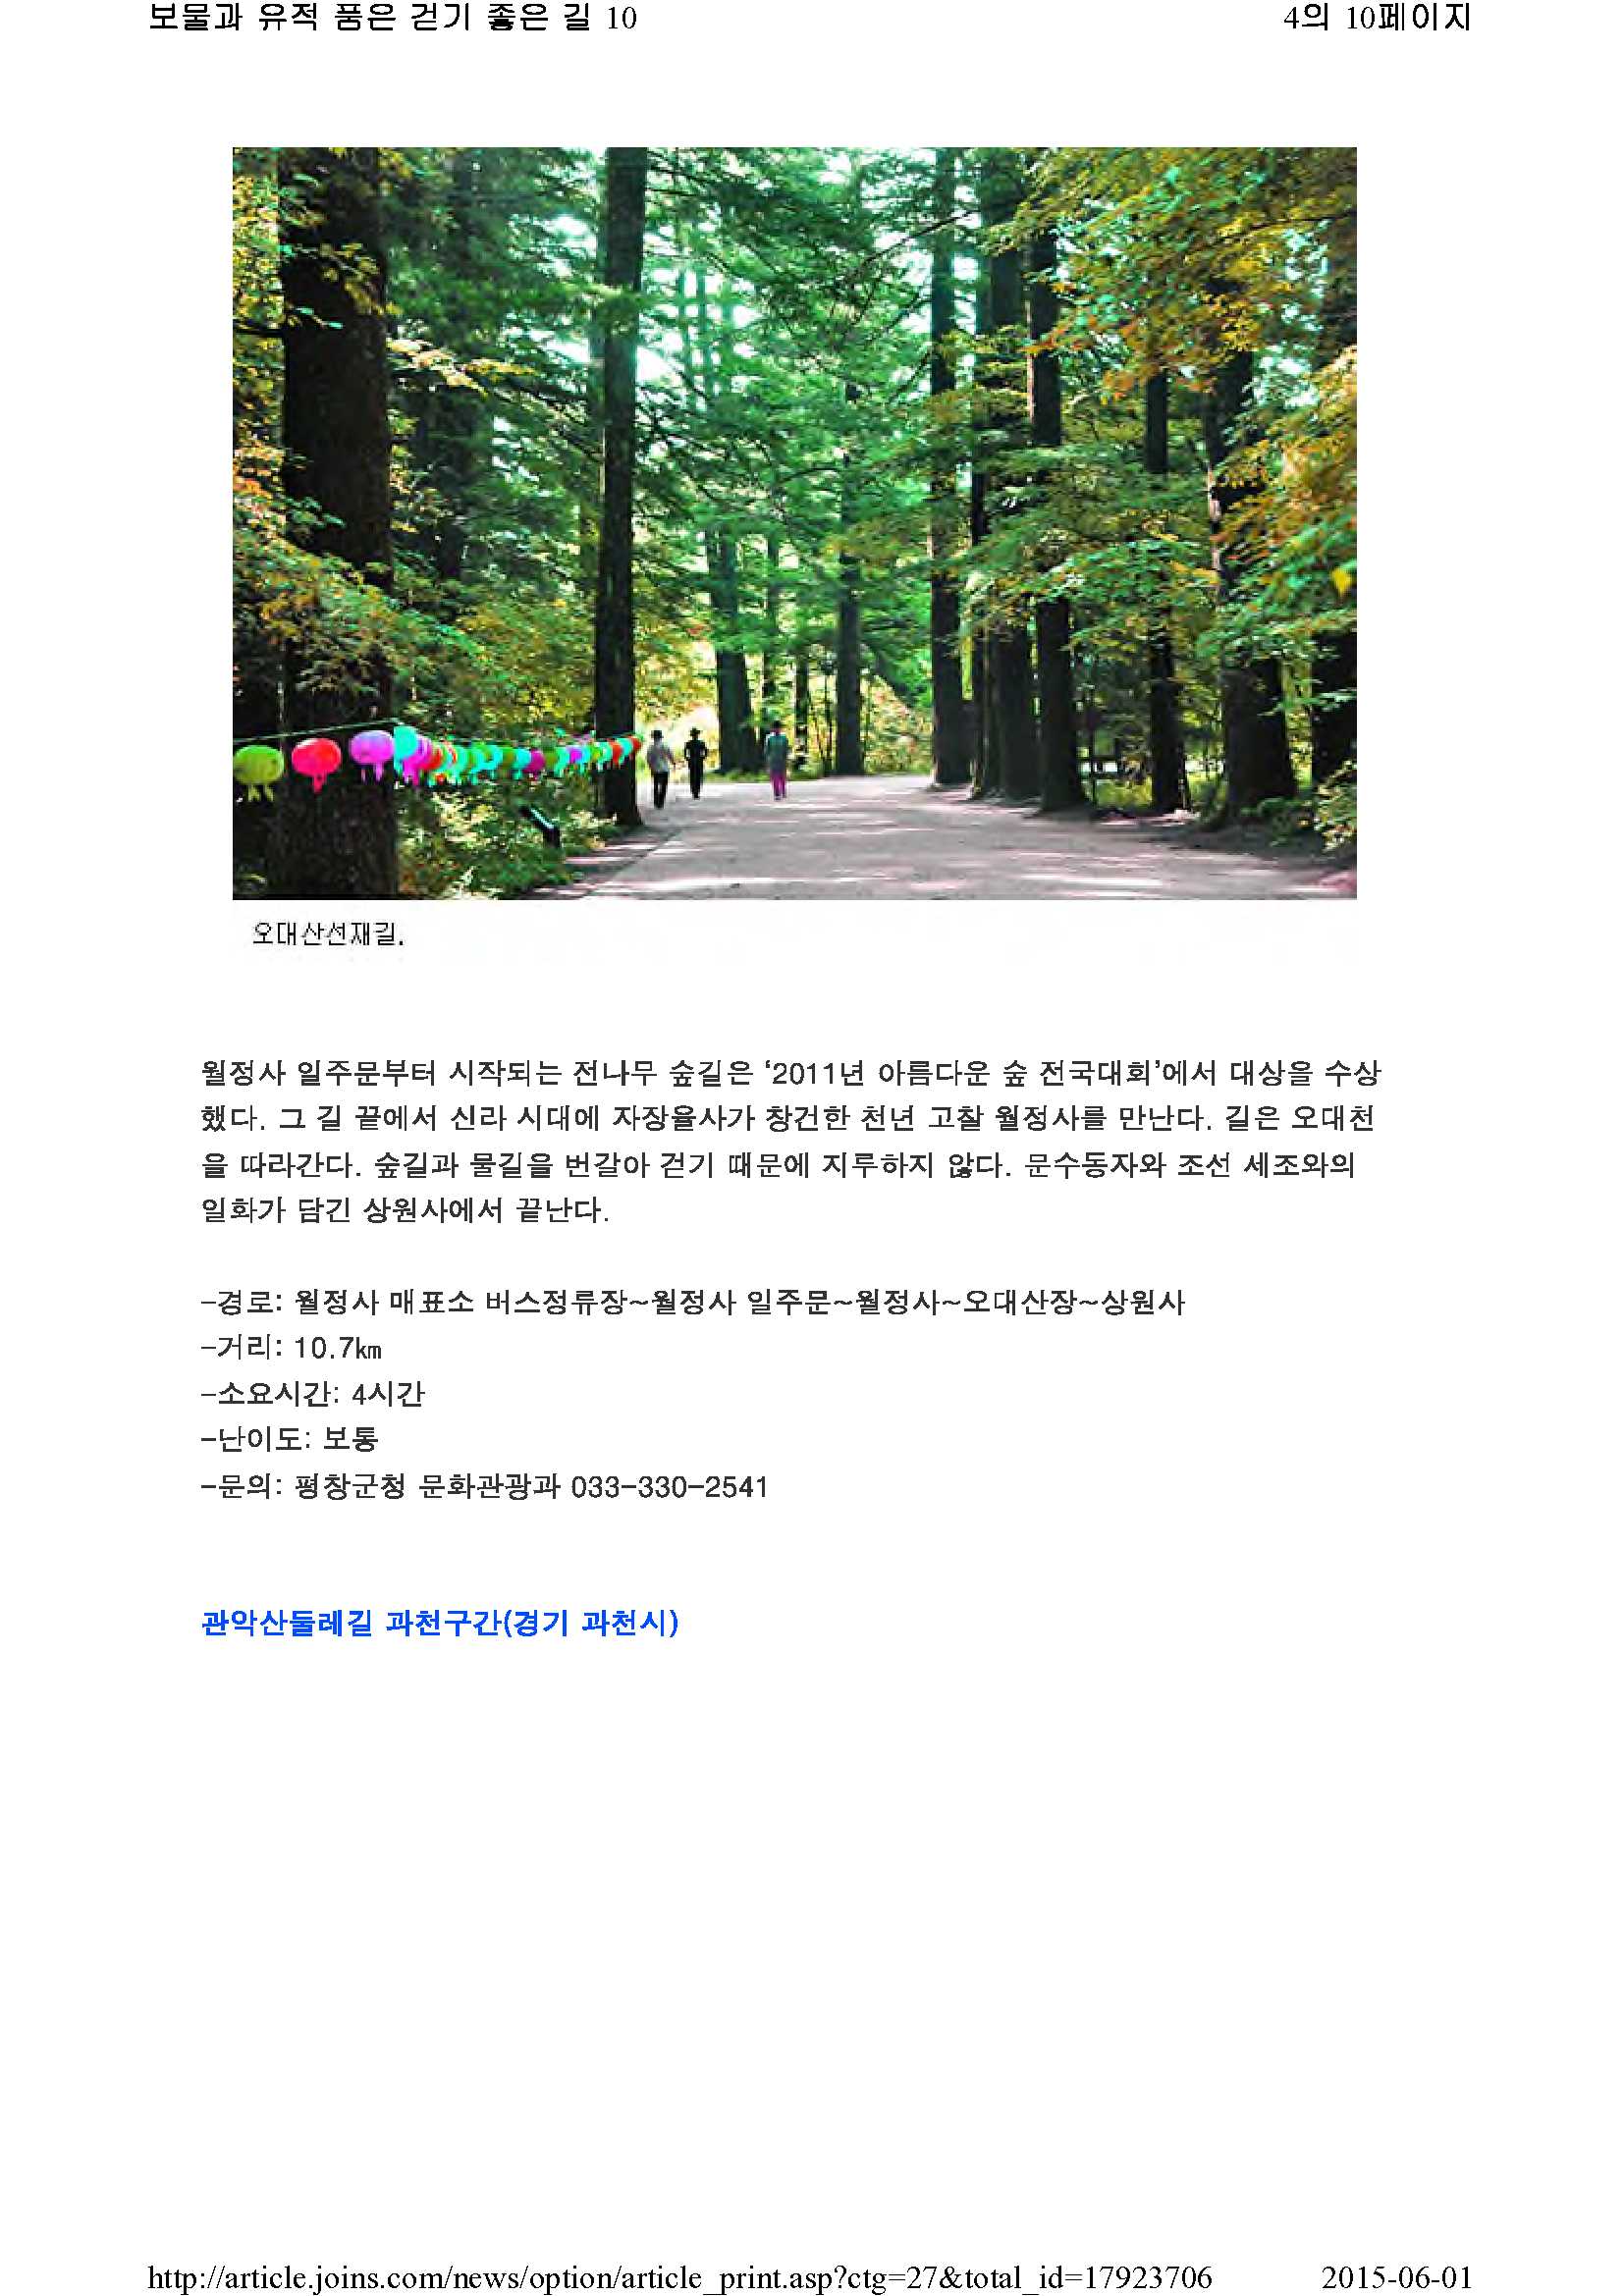 보물과 유적 품은 걷기 좋은 길 10(중앙일보)_4.jpg